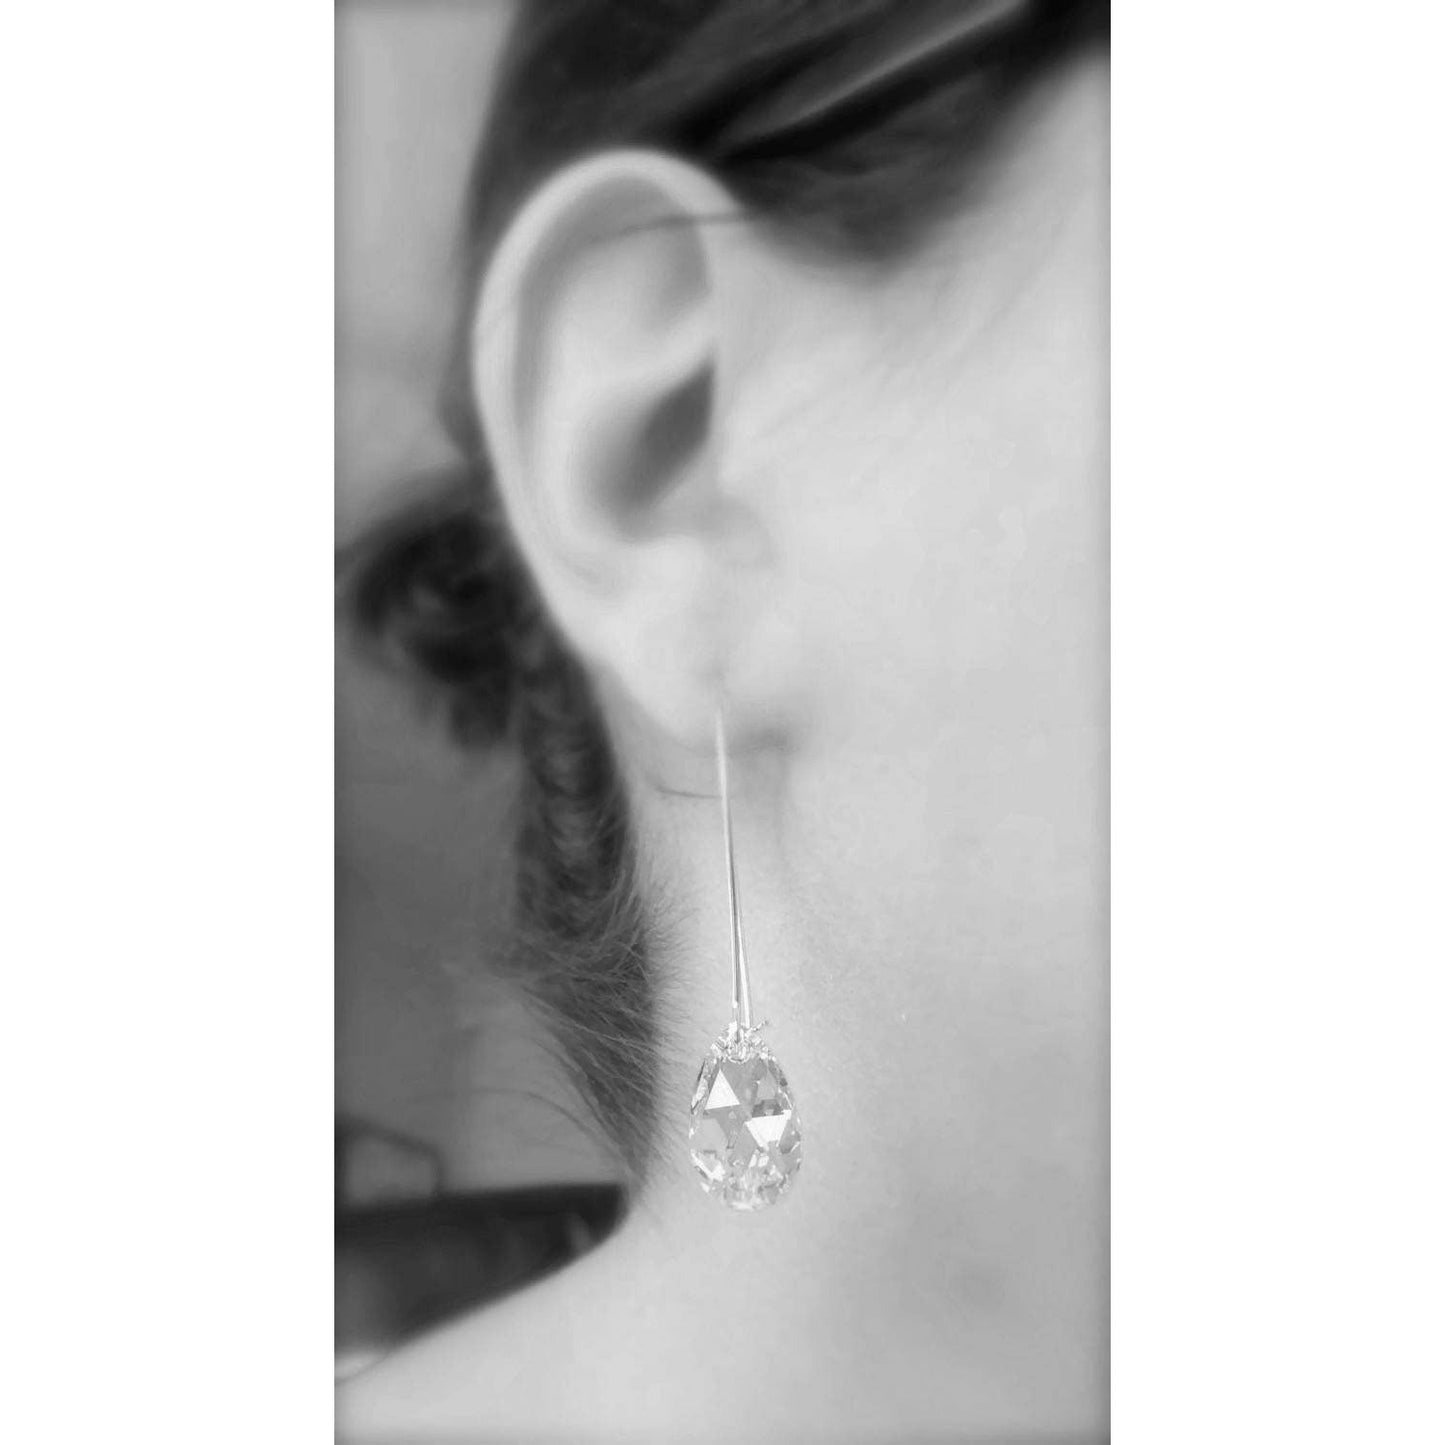 Long amethyst earrings